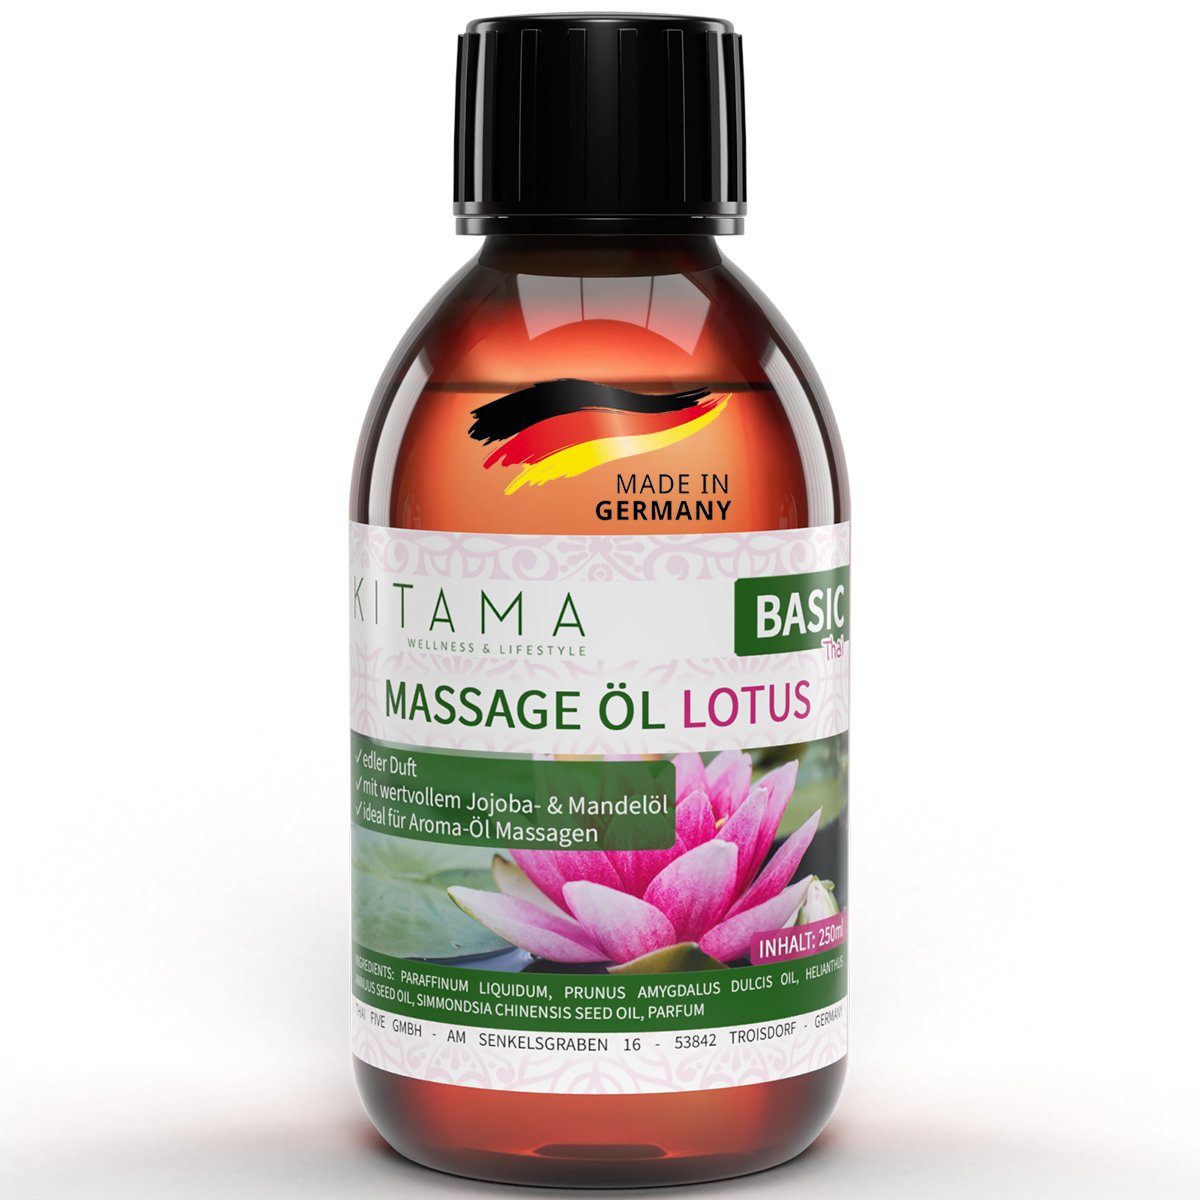 Kitama Massageöl mit Aroma - Körper-Öl für Massagen Pflegeöl Aroma-Öl Thai-Öl 250ml, Lotus